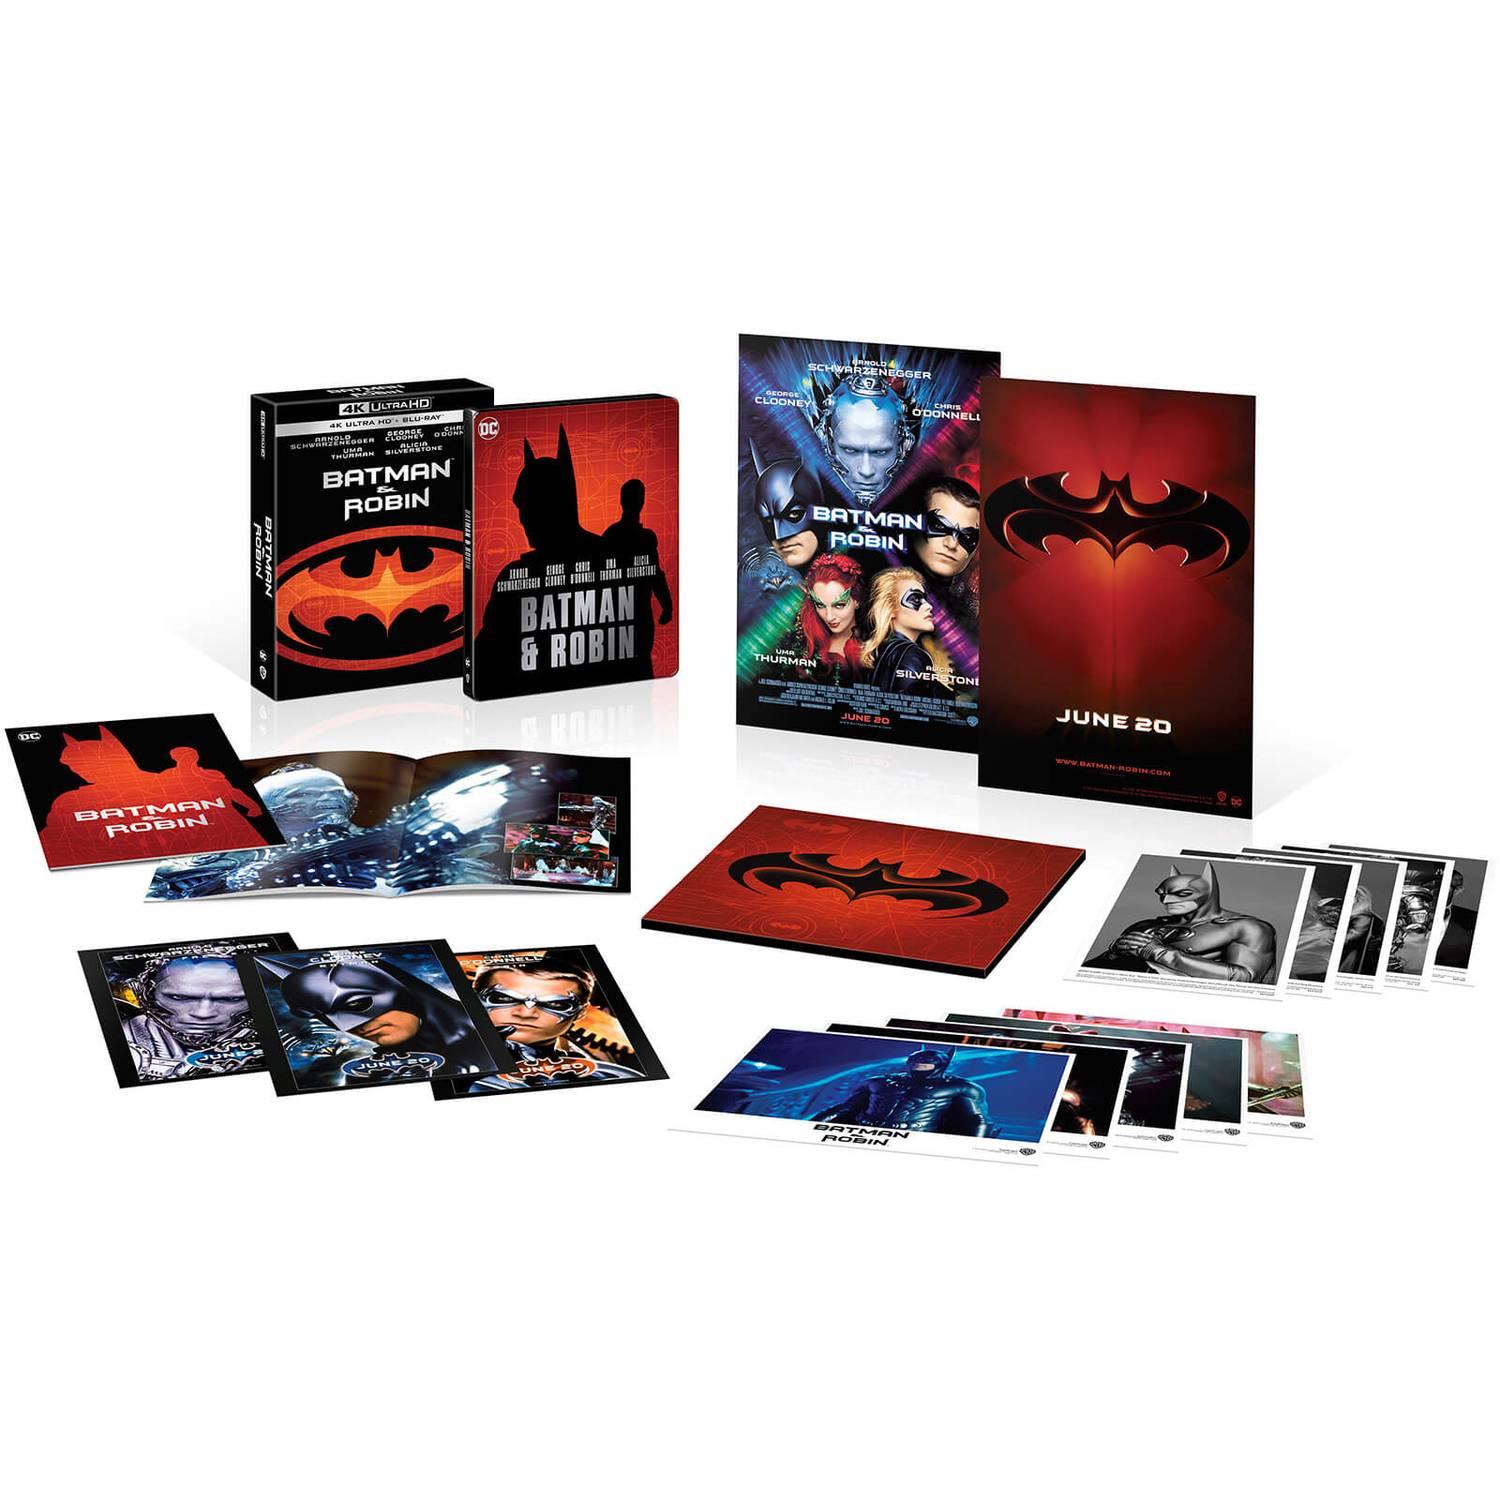 Бэтмен и Робин (4K UHD + Blu-ray) Ultimate Collector's Edition Steelbook